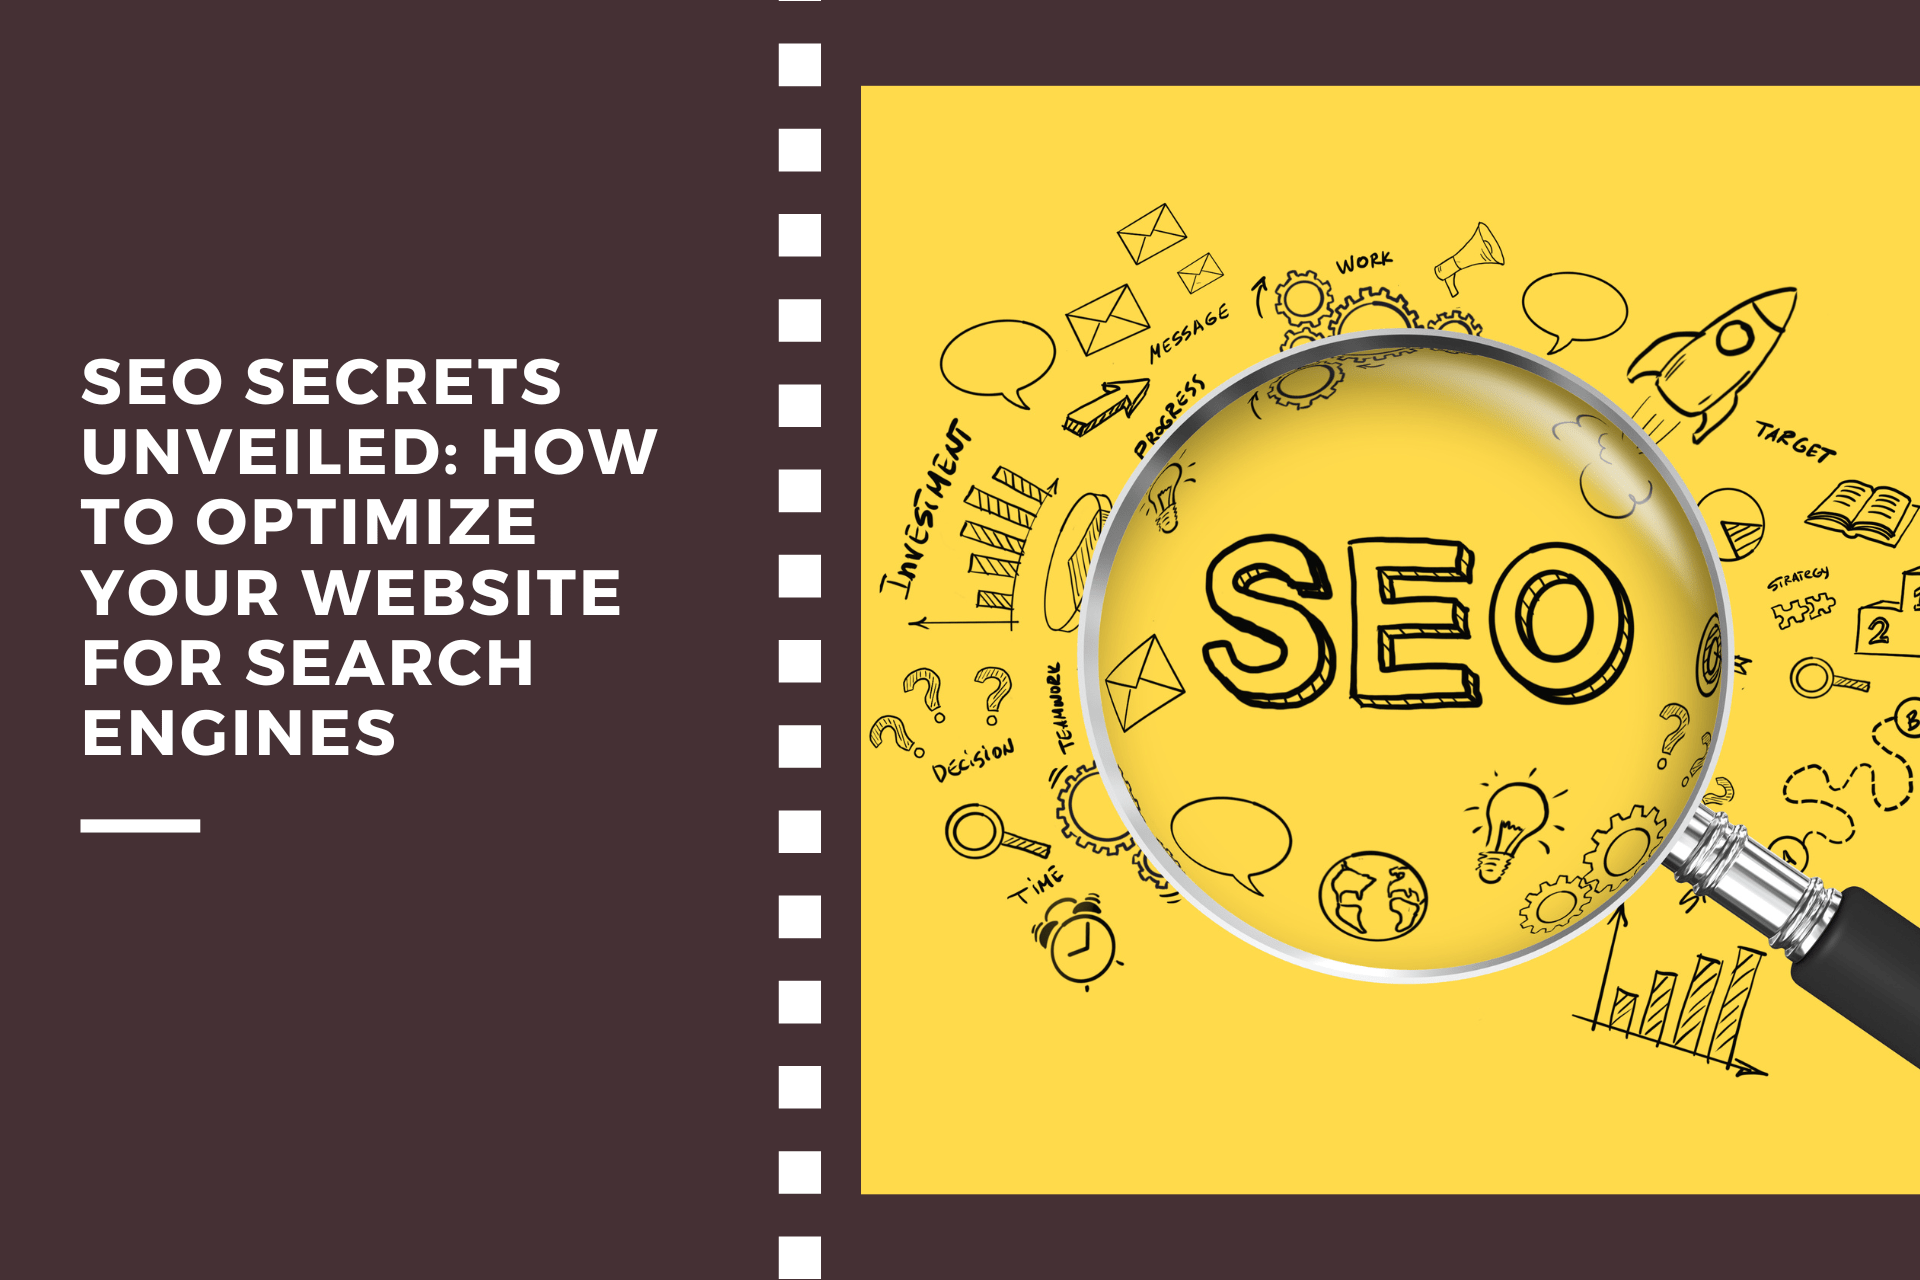 SEO Secrets: Optimize Your Website